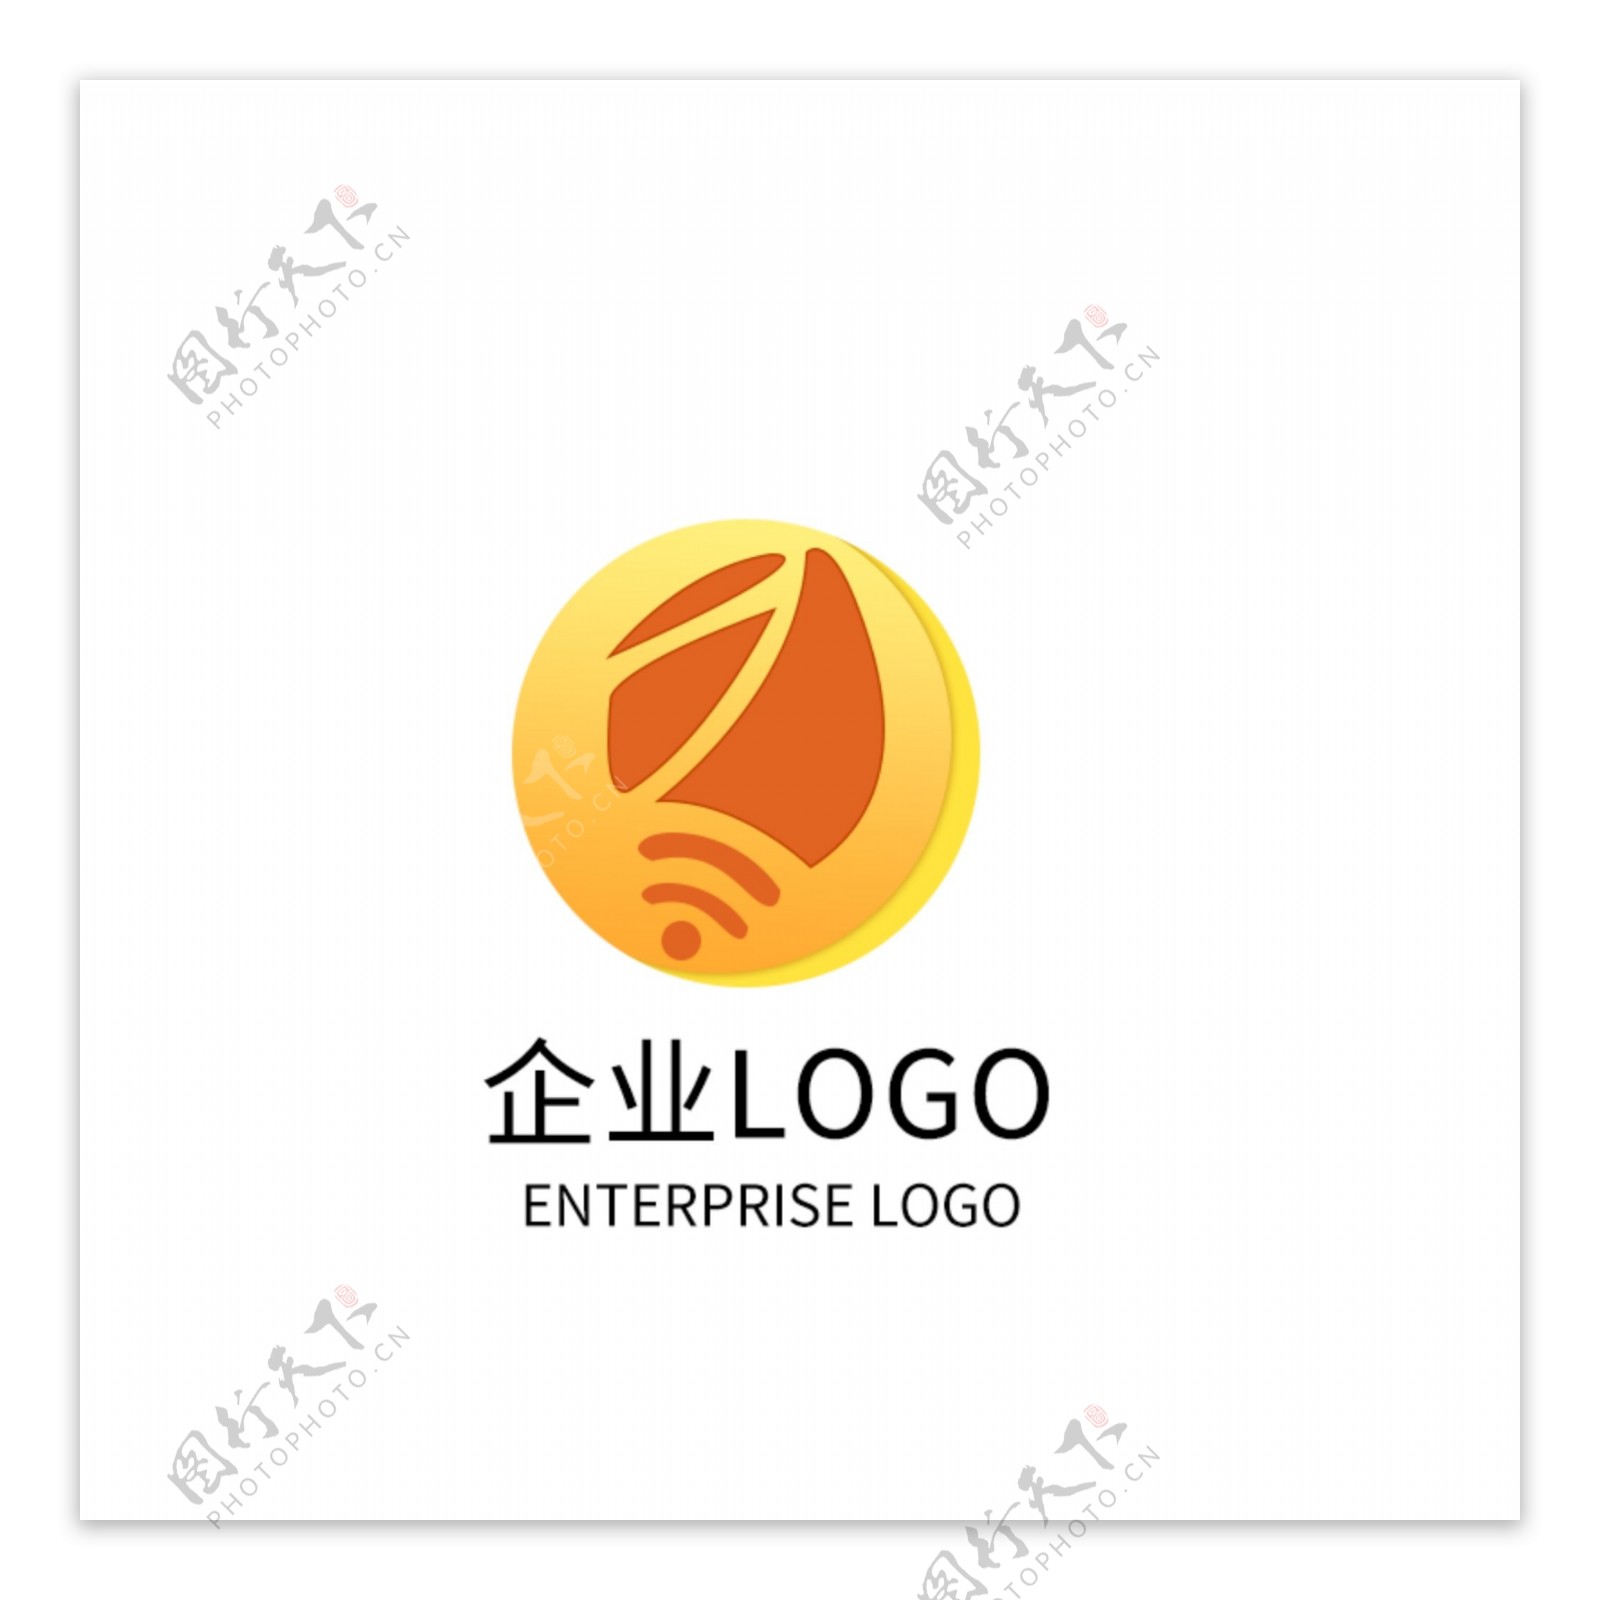 艺术科技公司LOGO设计企业标志